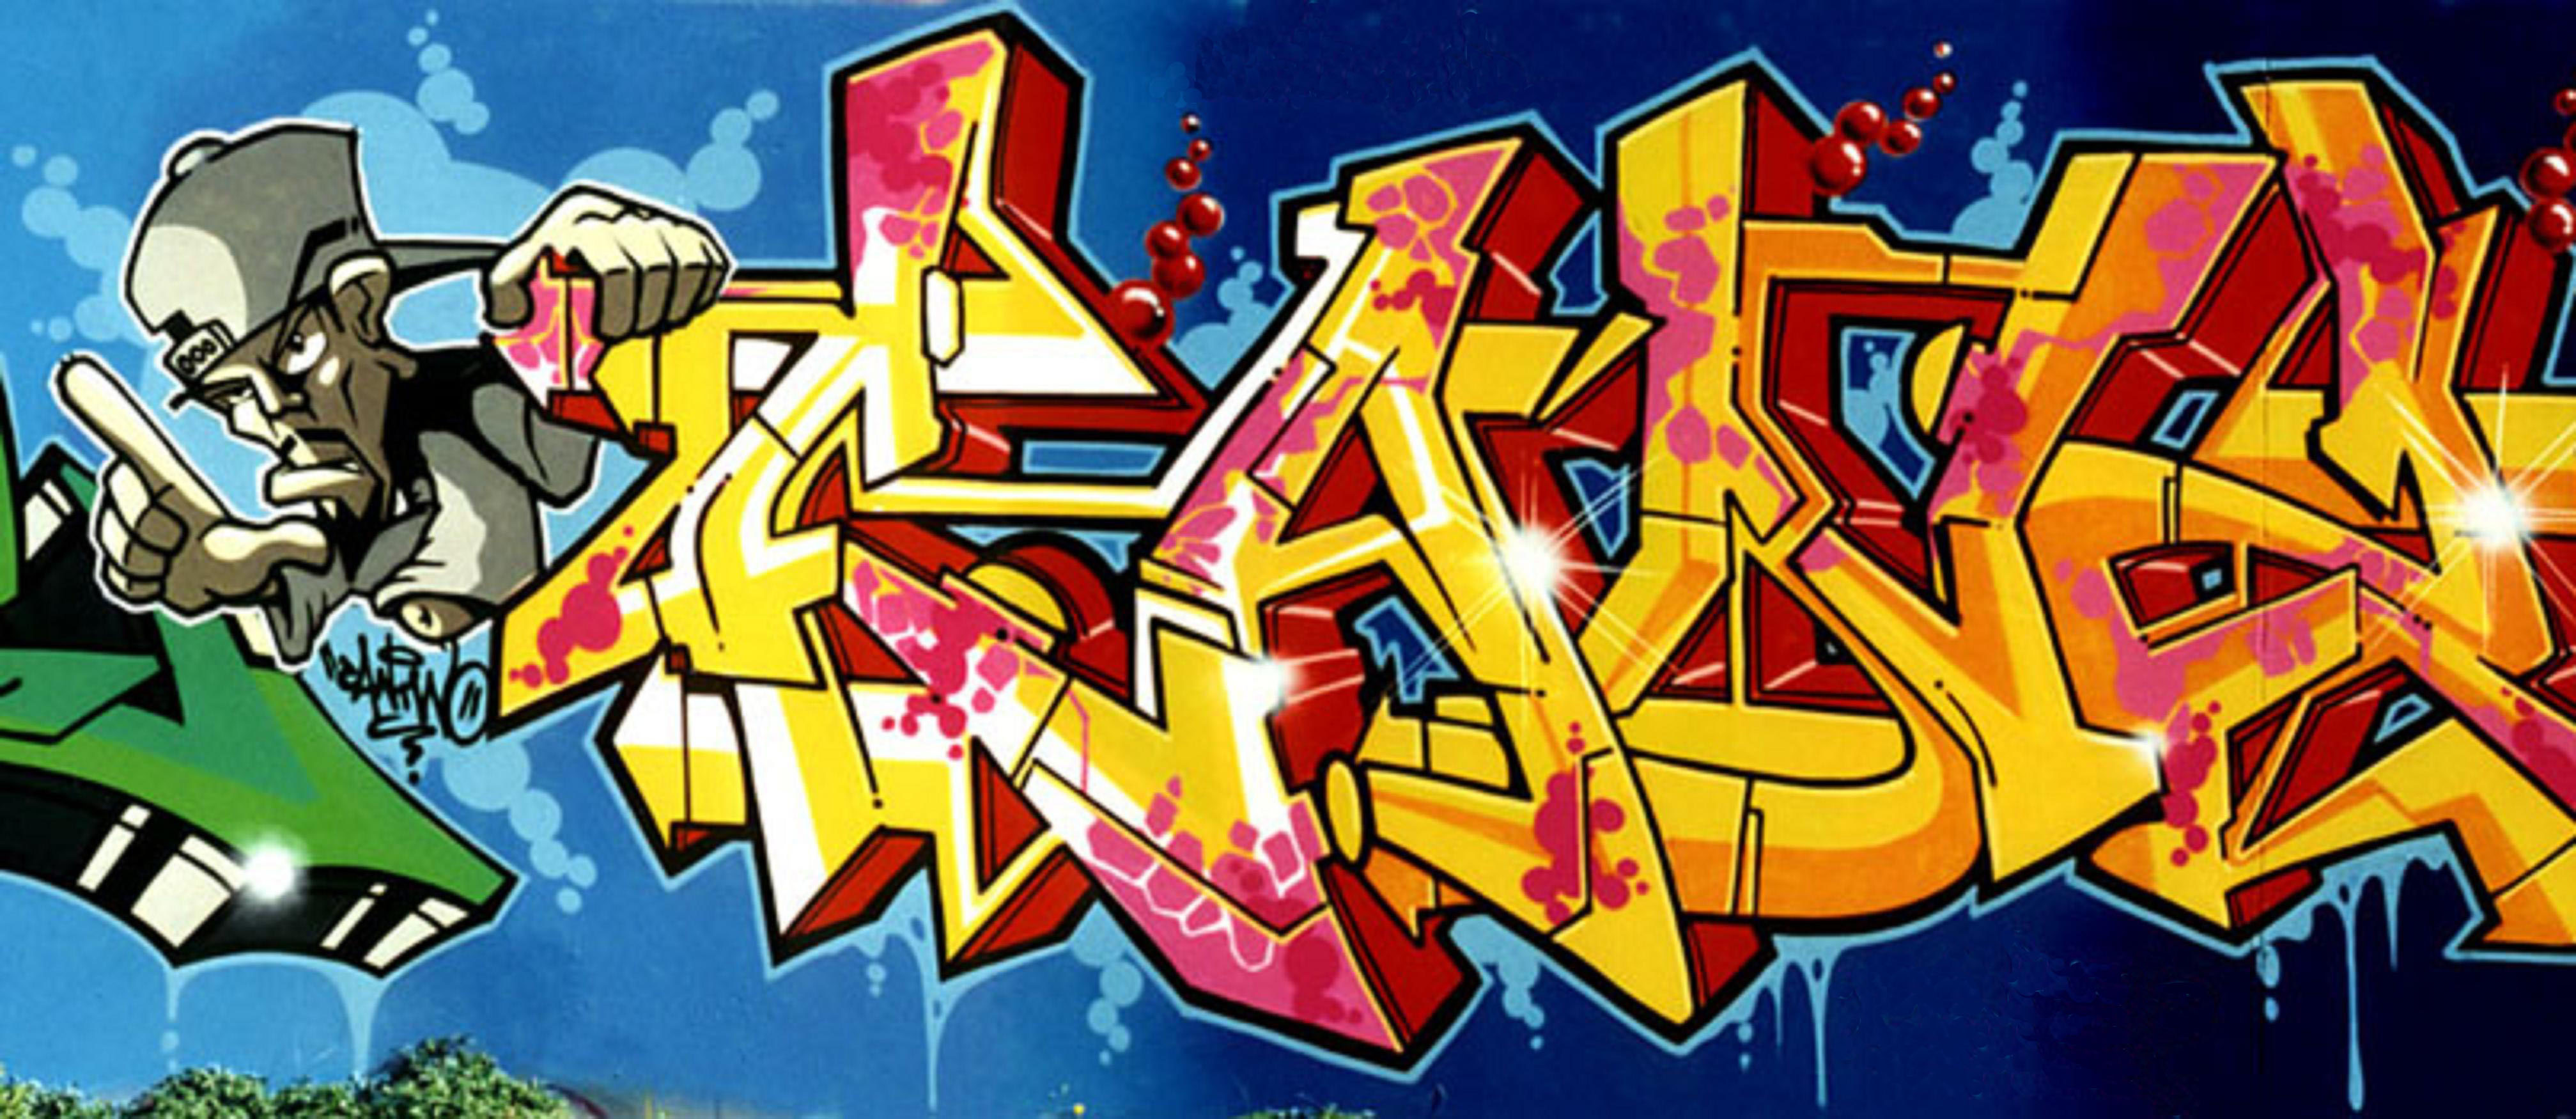 Can2-graffiti-art-3